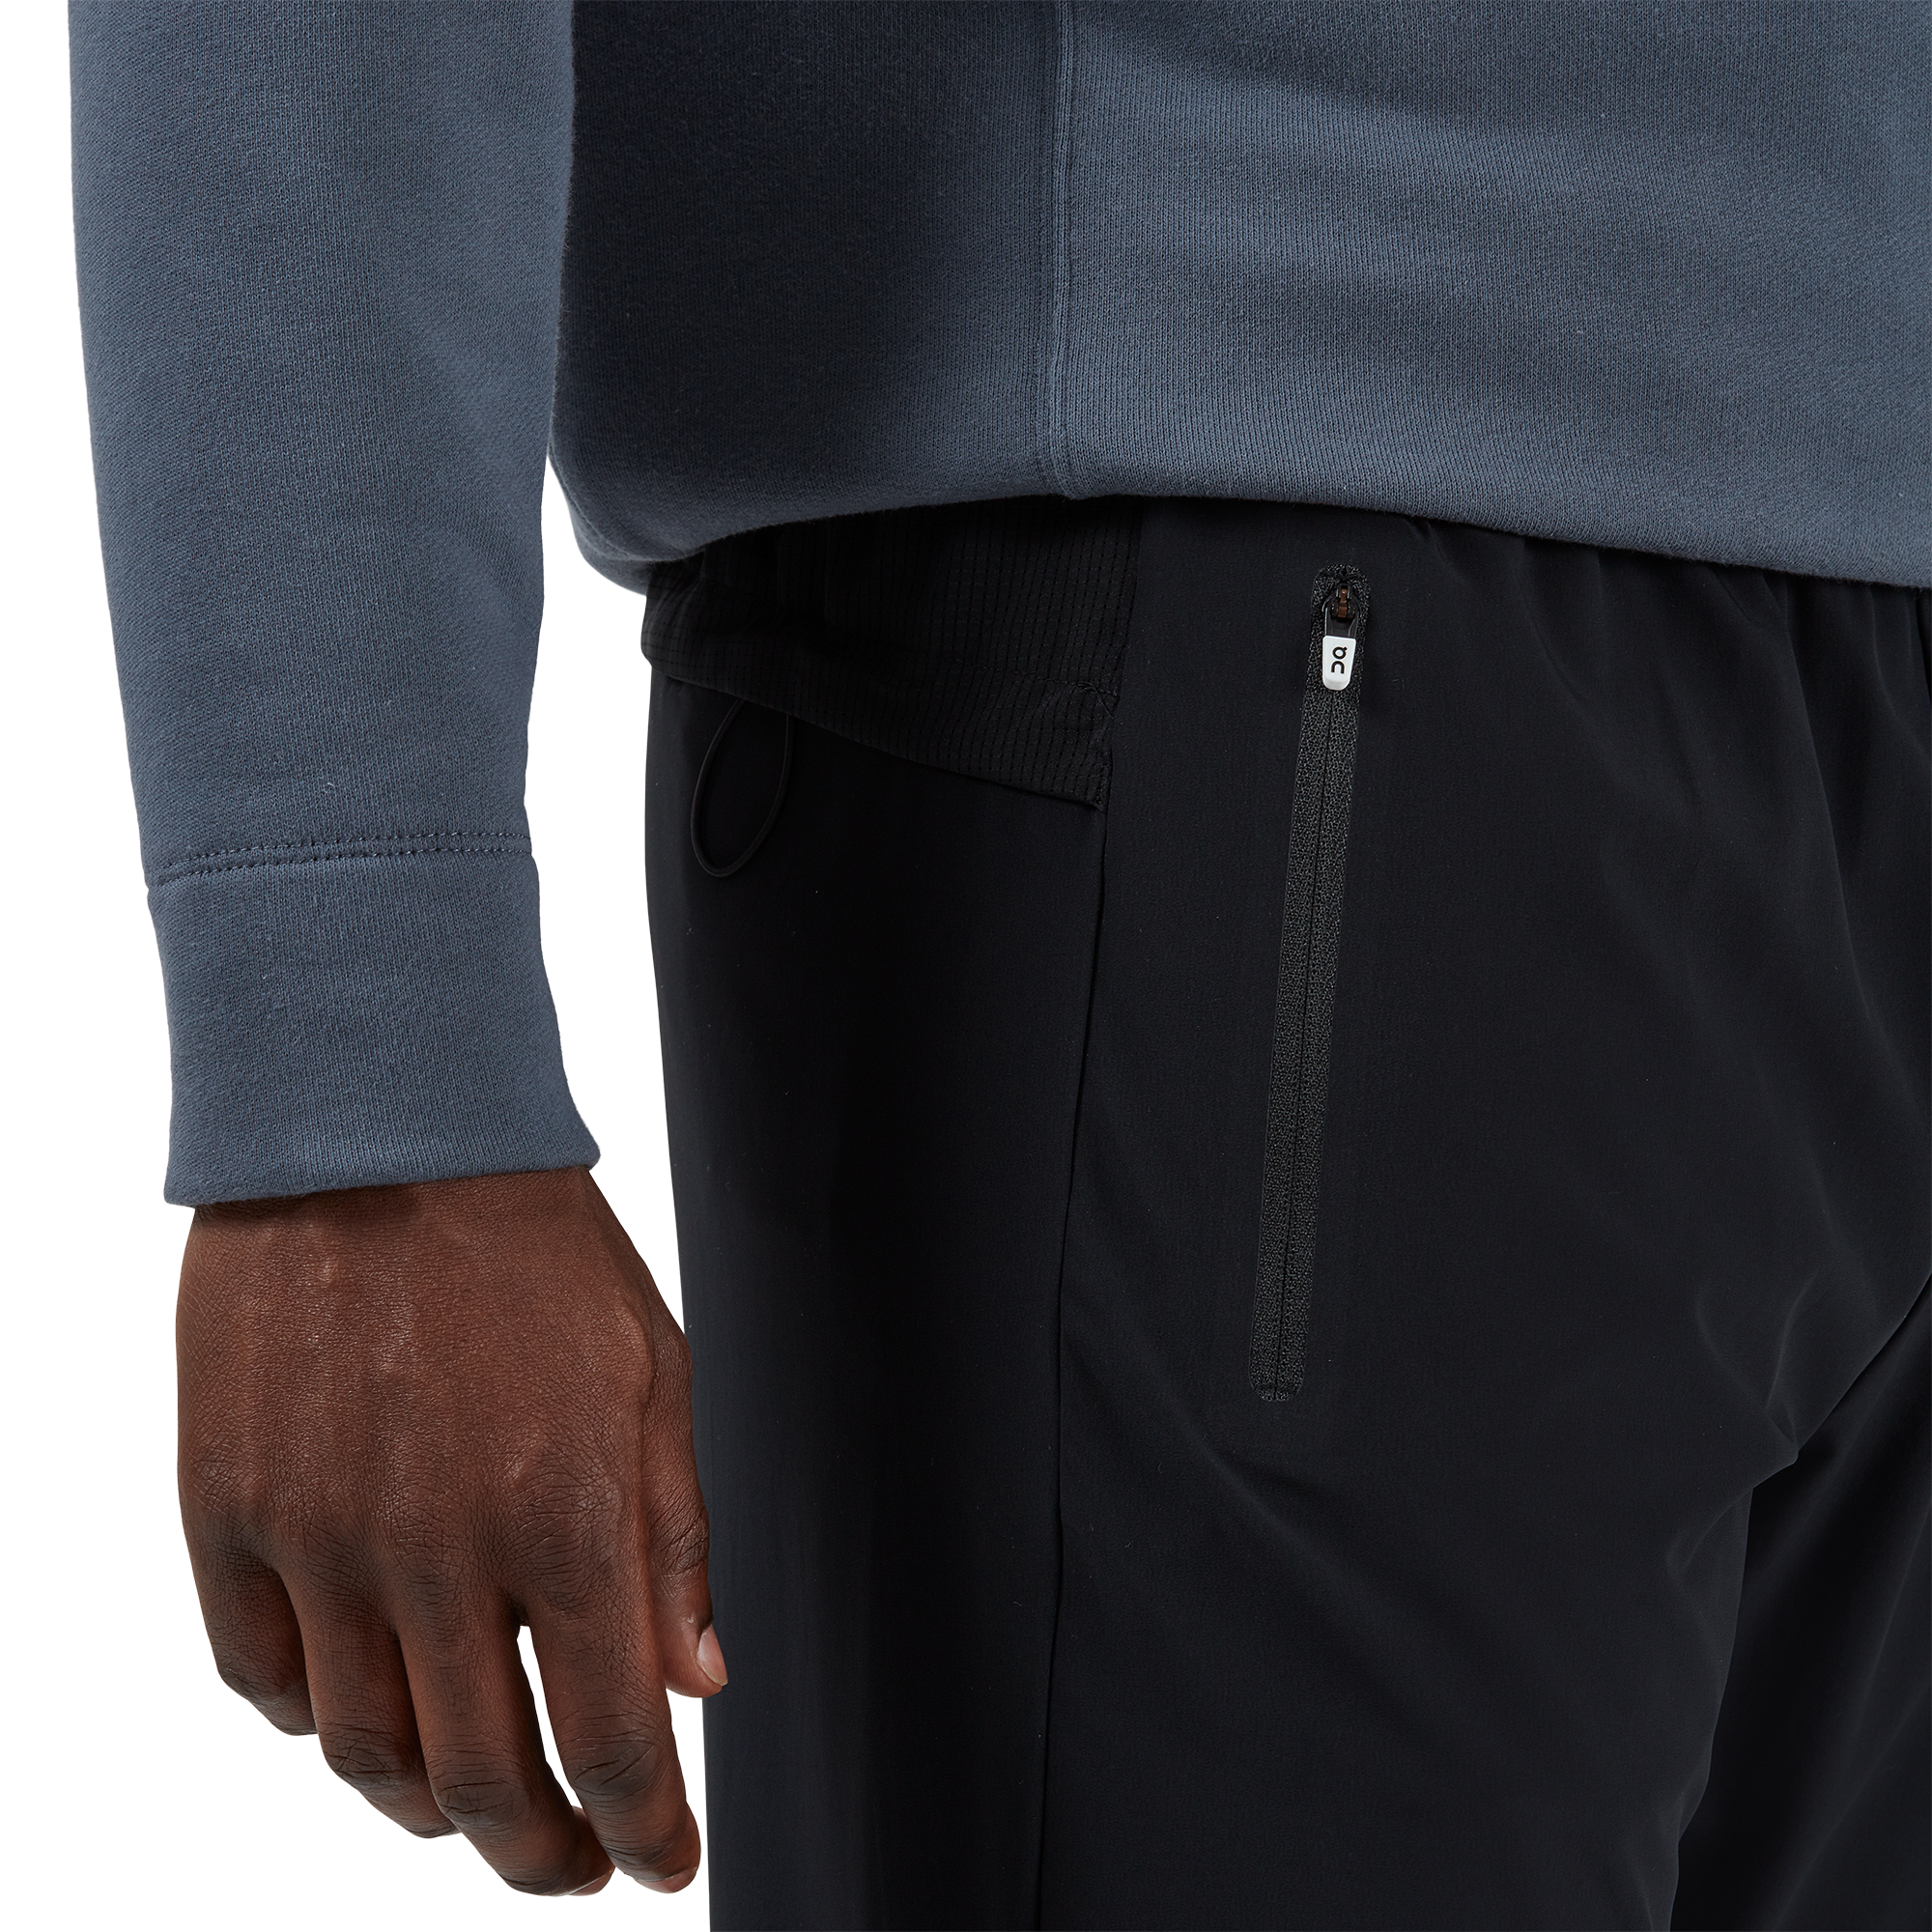 Elevate Kore Pant, Men's Black Athletic Pants